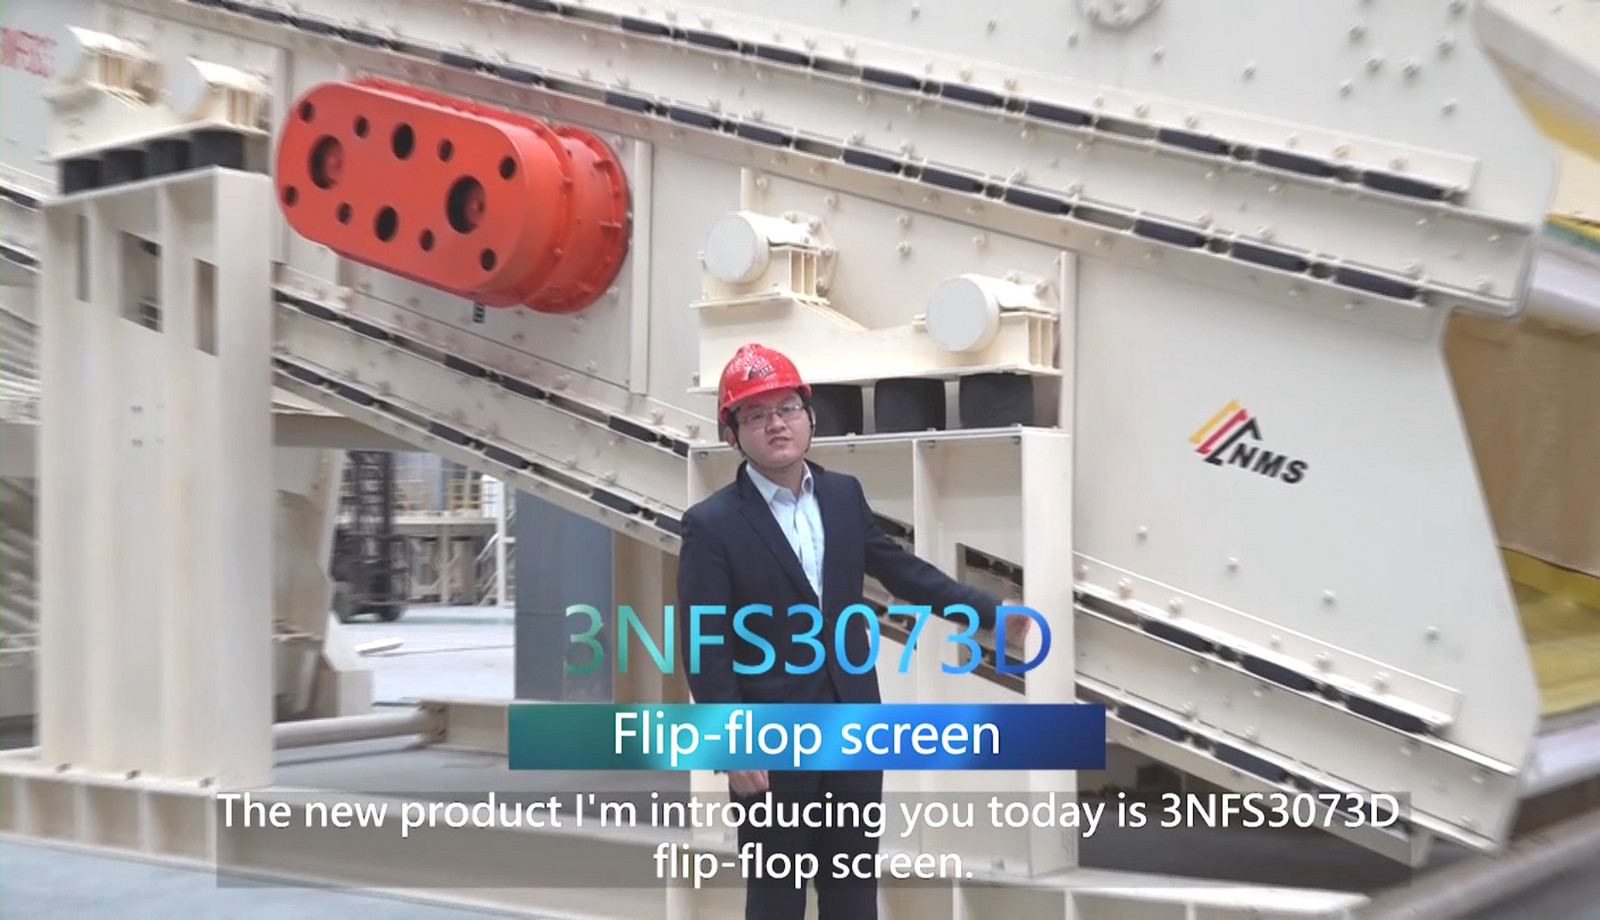 Introduction of 3NFS3073D flip-flop screen